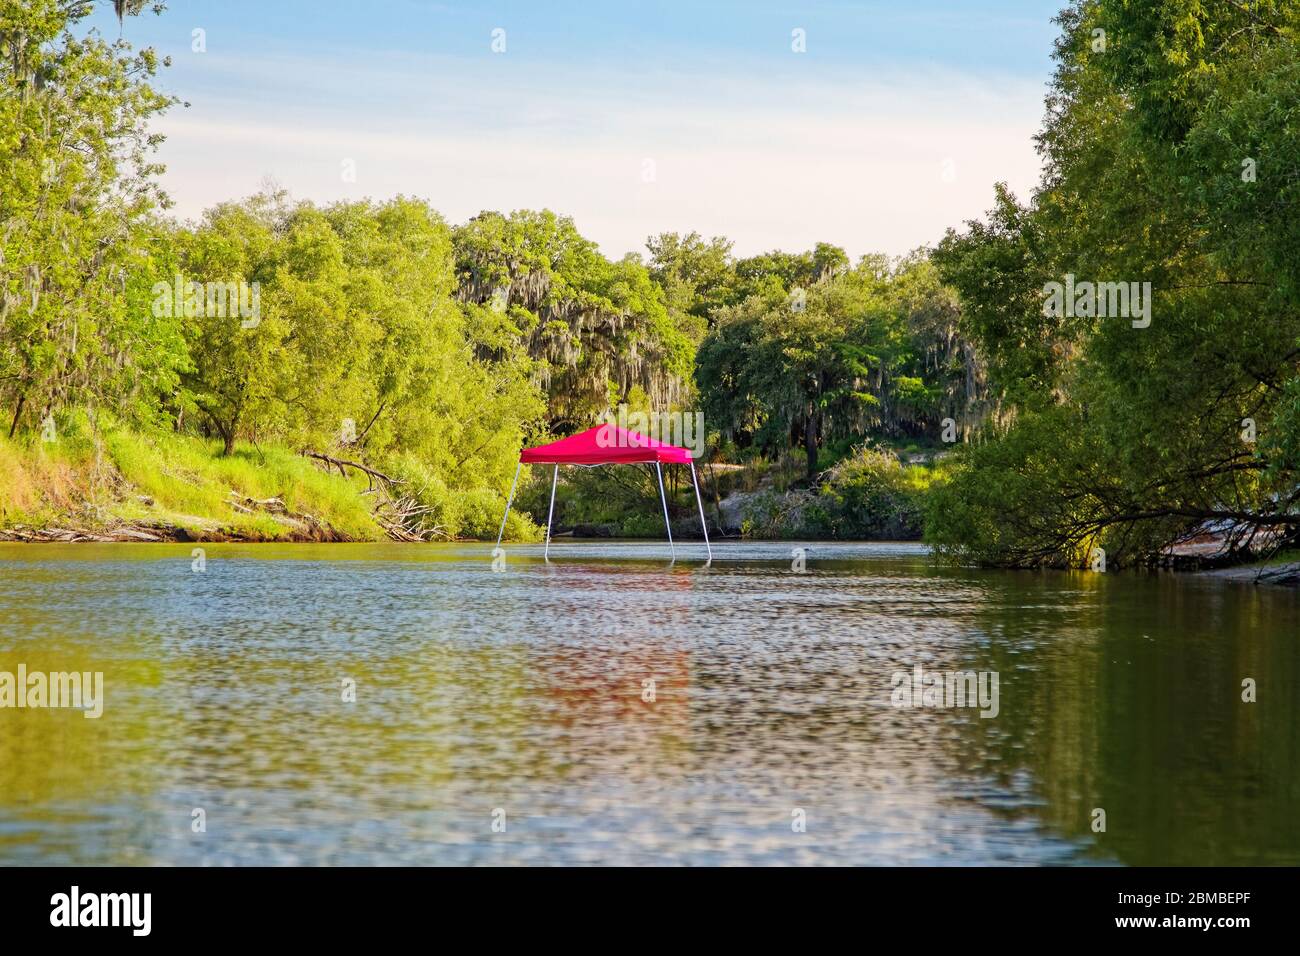 Tettoia rossa; centro del fiume; vista strana, alberi, acqua, scena; Peace River; Florida, USA; Arcadia; FL; primavera Foto Stock